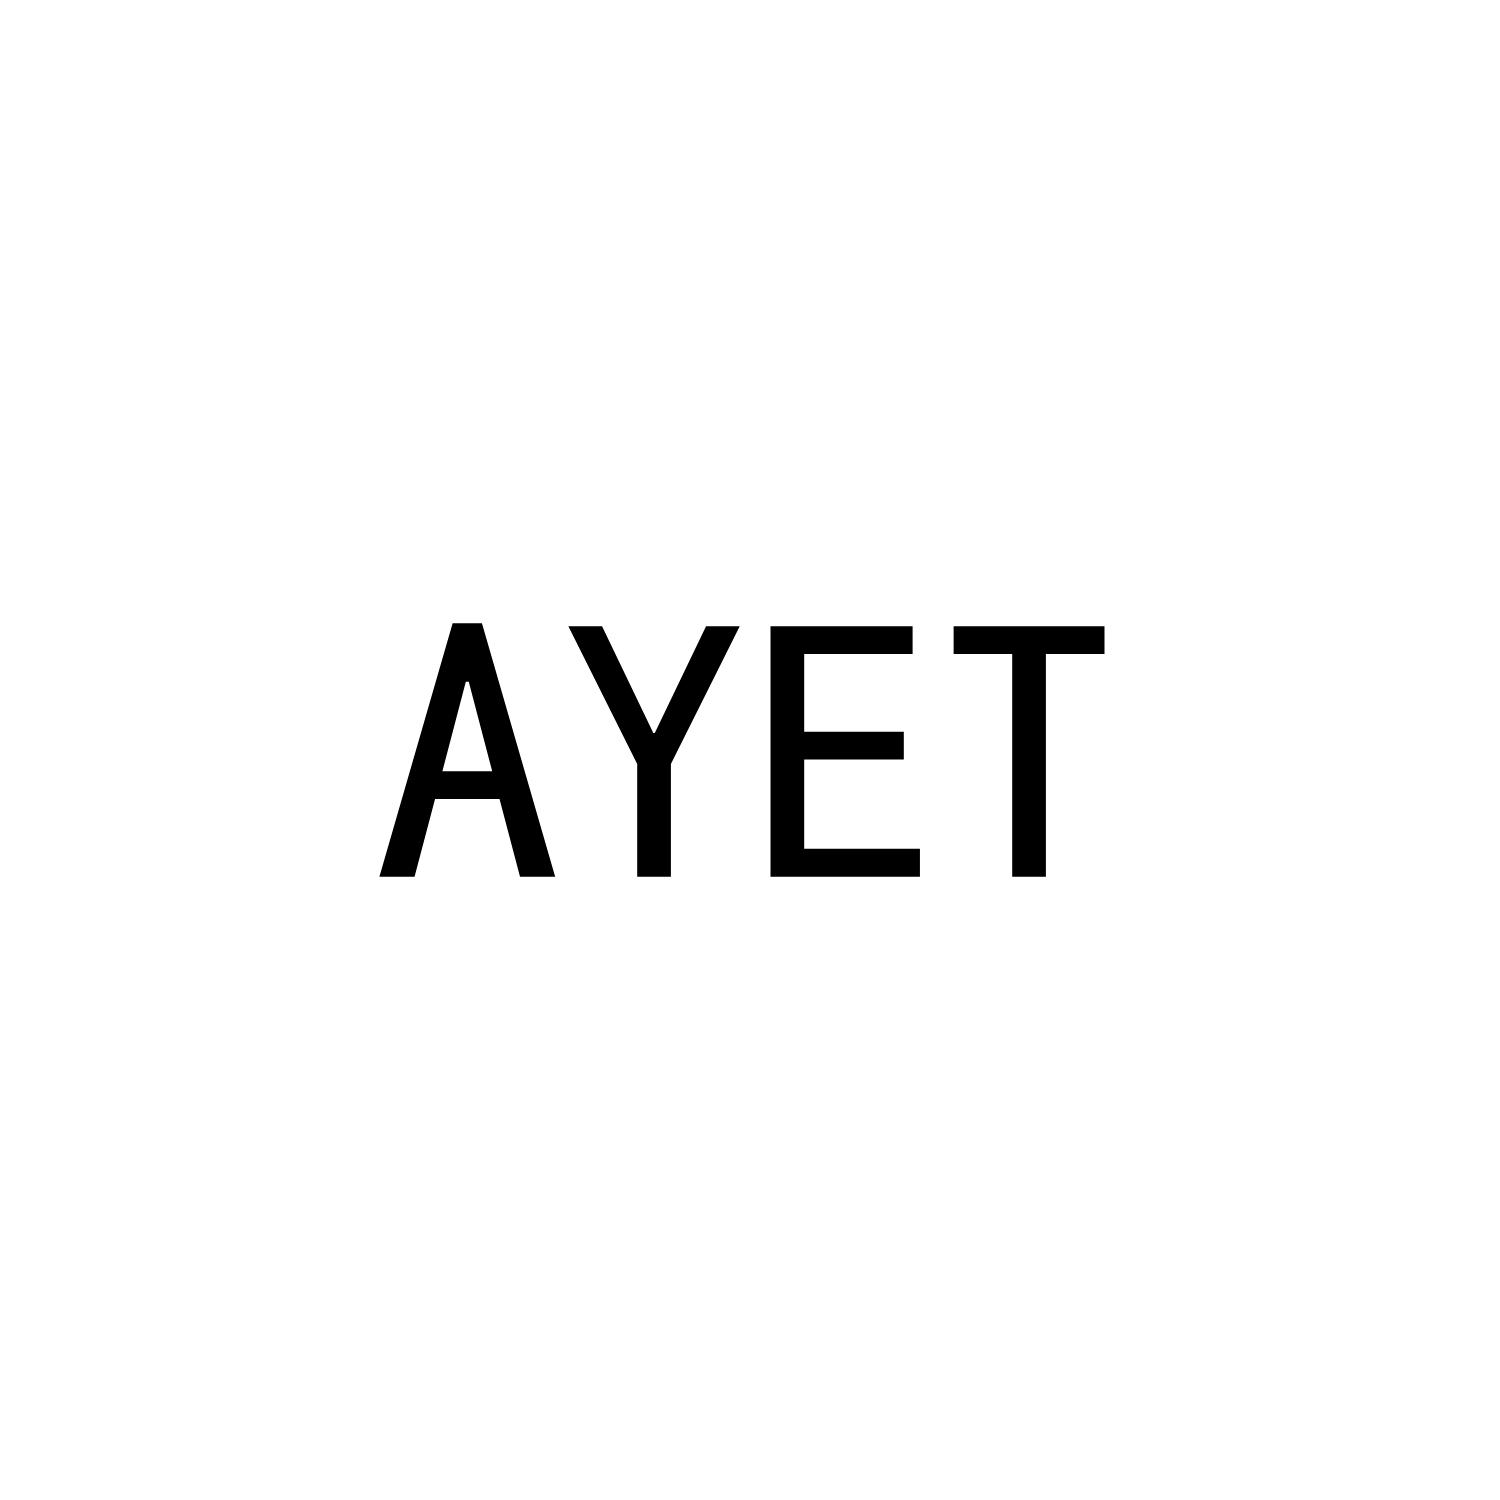 AYET